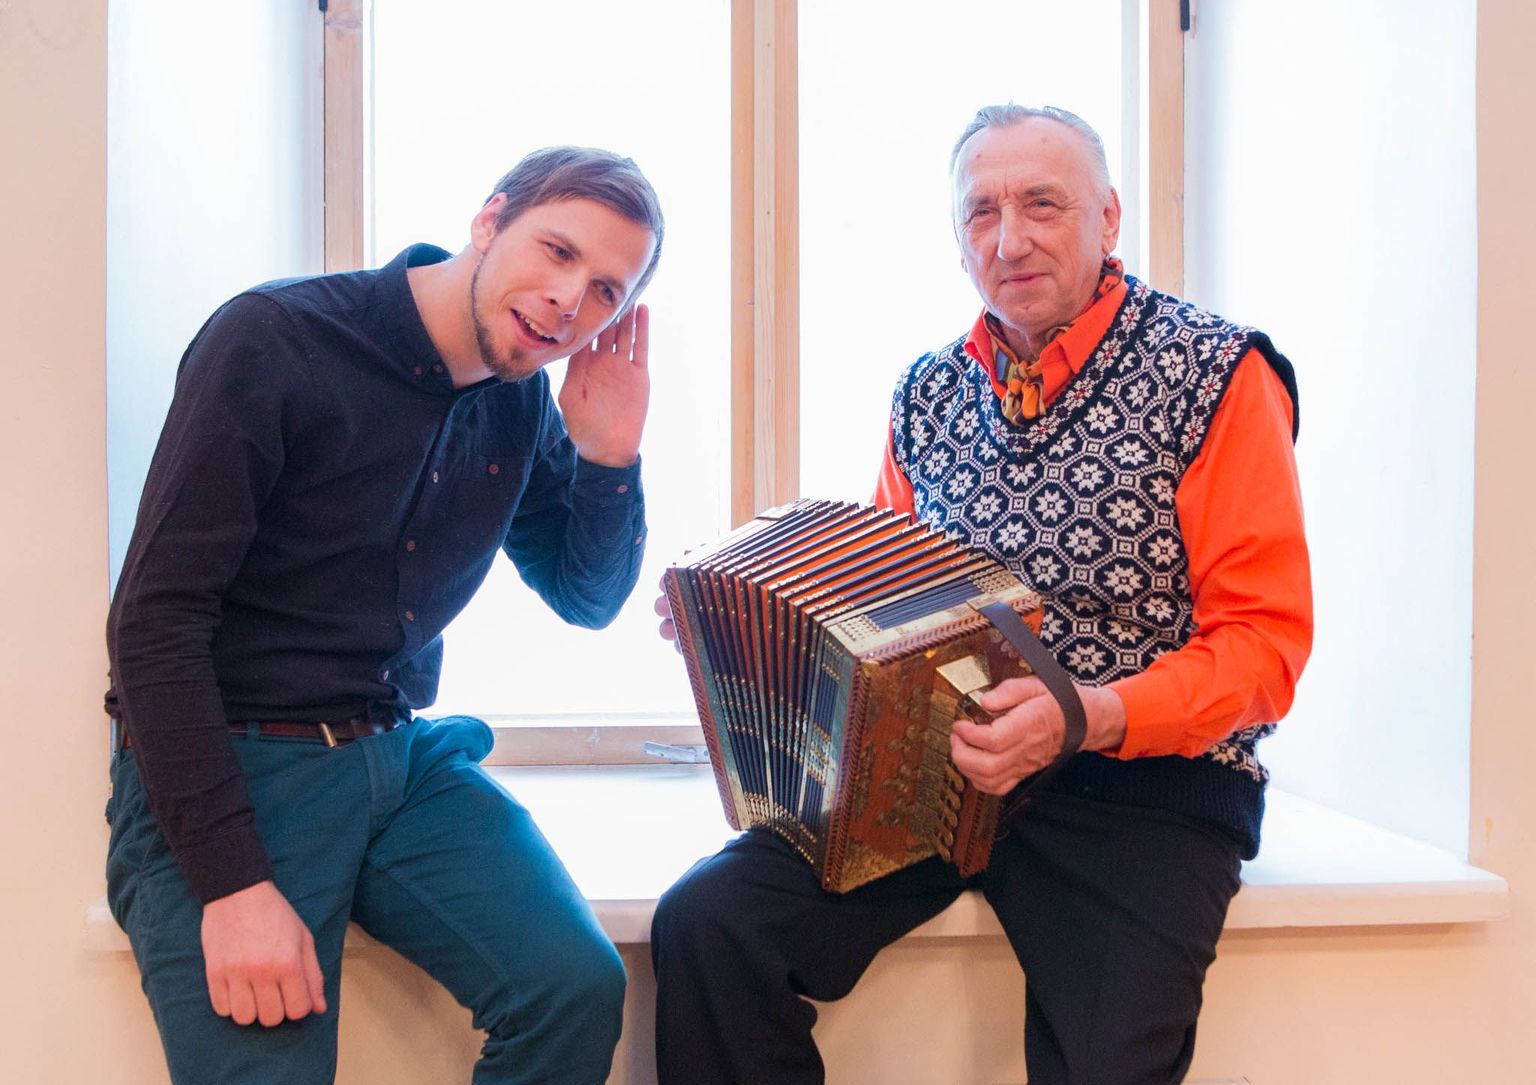 Jaan Jaago ja Harri Lindmets alustasid Eesti turneed Tori rahvamajast.